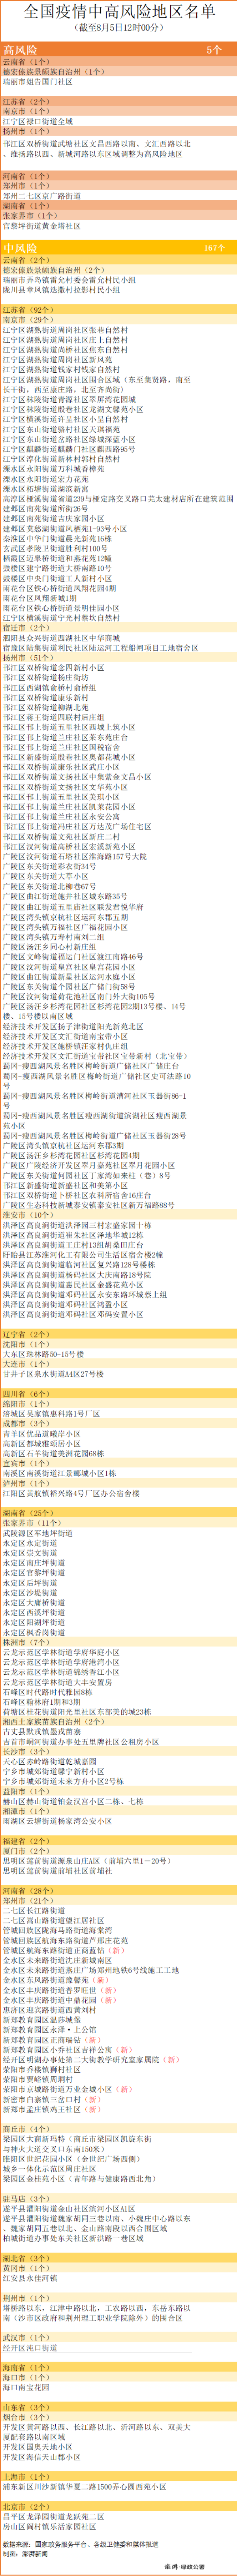 中风险区南京-2、郑州+10，全国中高风险区167+5个